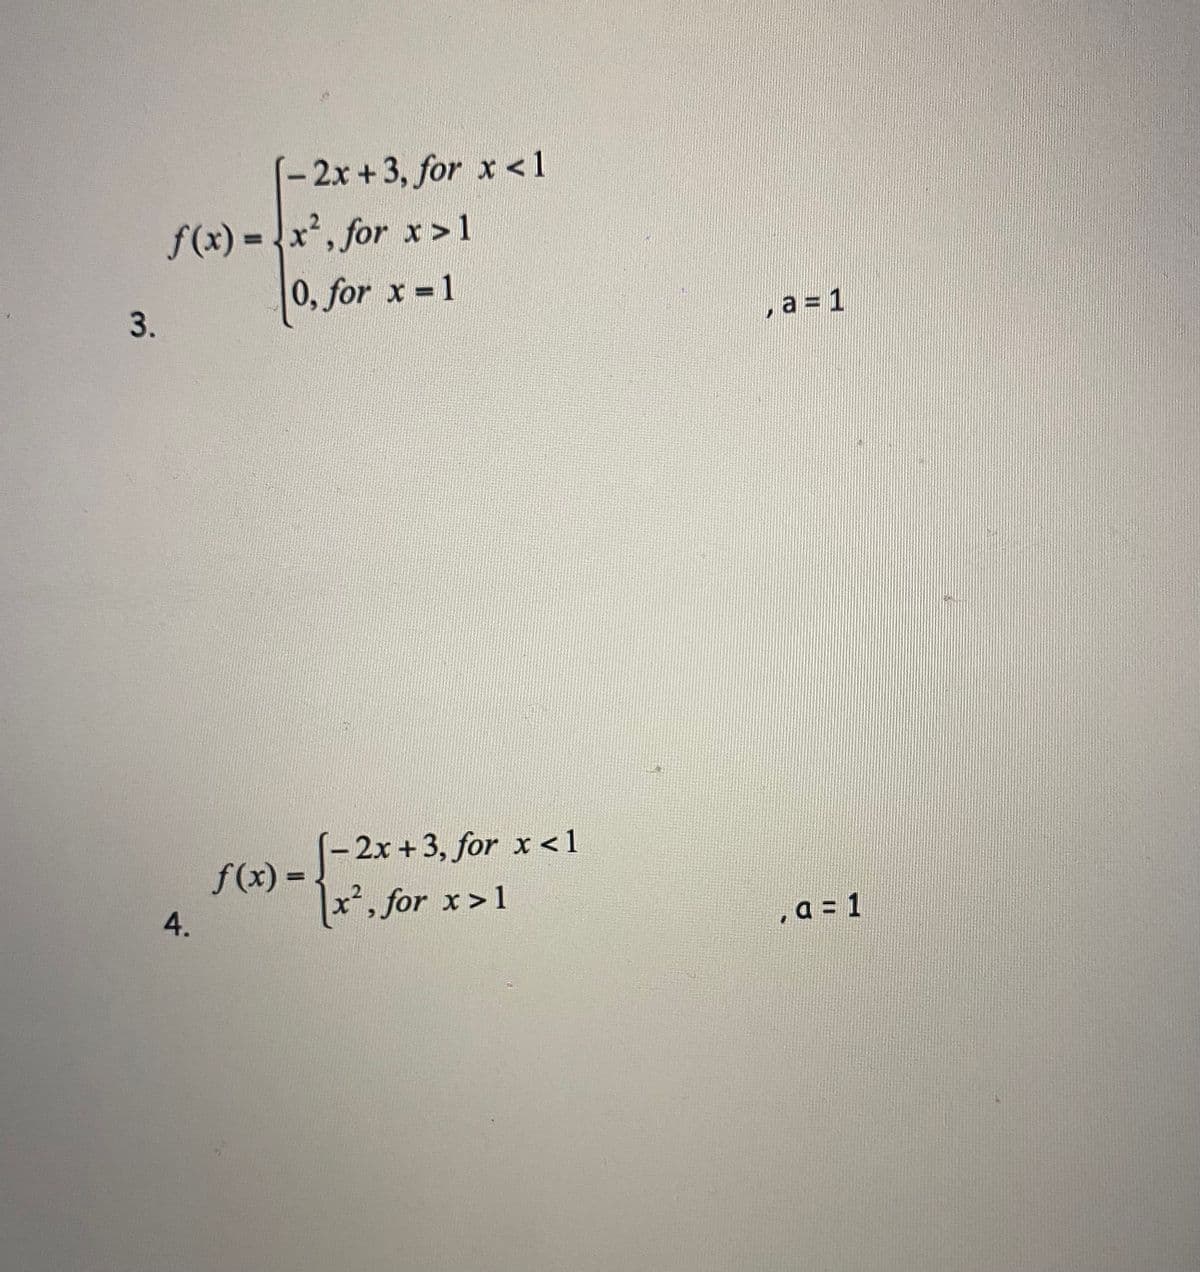 (-2x+3, for x <1
f(x) - x', for x>1
.2
%D
0, for x 1
, a = 1
-2x +3, for x <1
f(x) -.
%3D
4.
x', for x>1
. a = 1
3.
